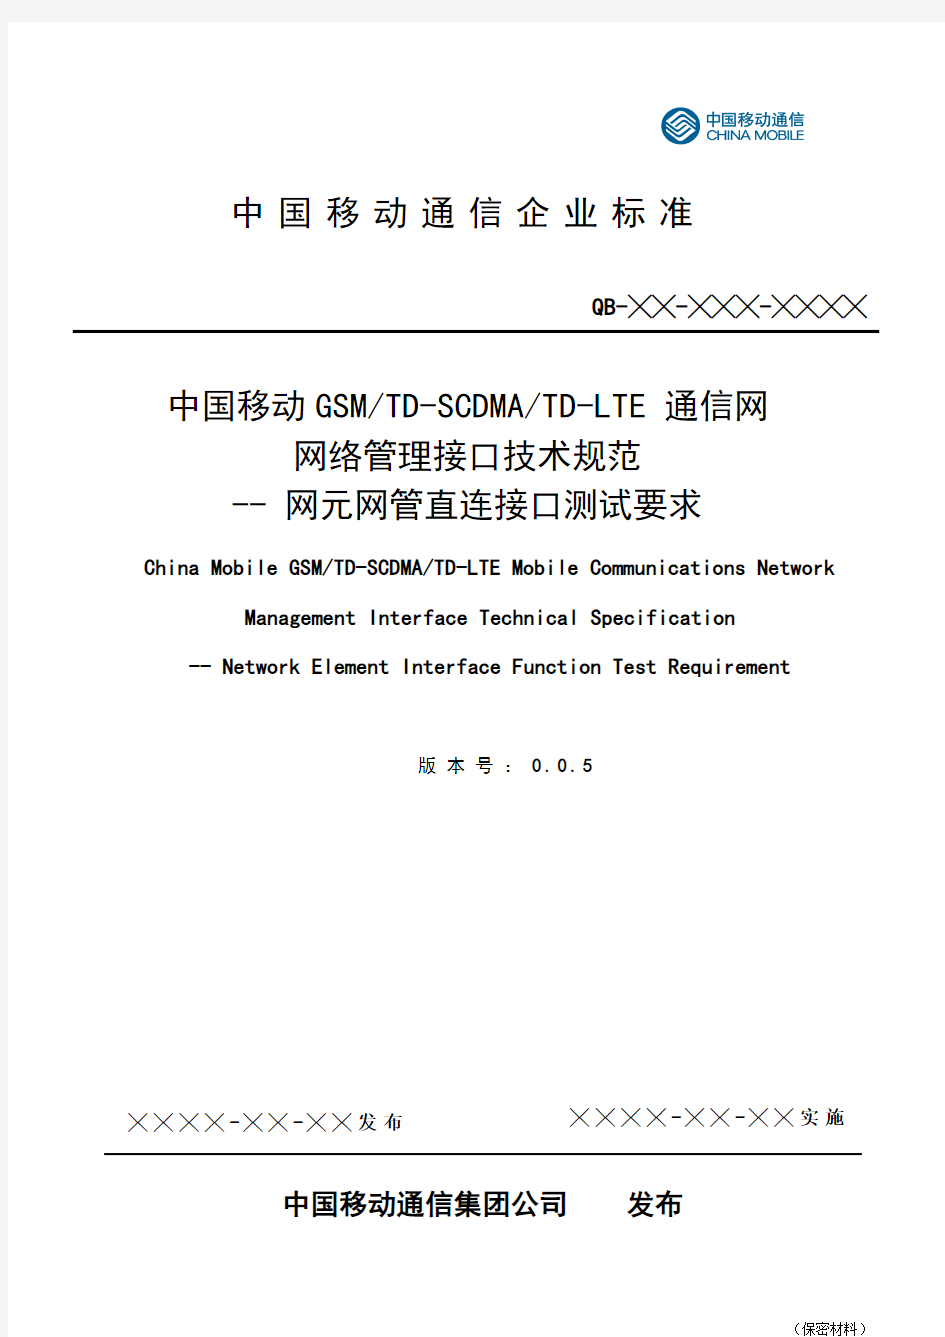 中国移动GSM TD-SCDMA TD-LTE通信网网络管理接口技术规范-网元网管网管直连接口测试要求(v0.0.4)0720